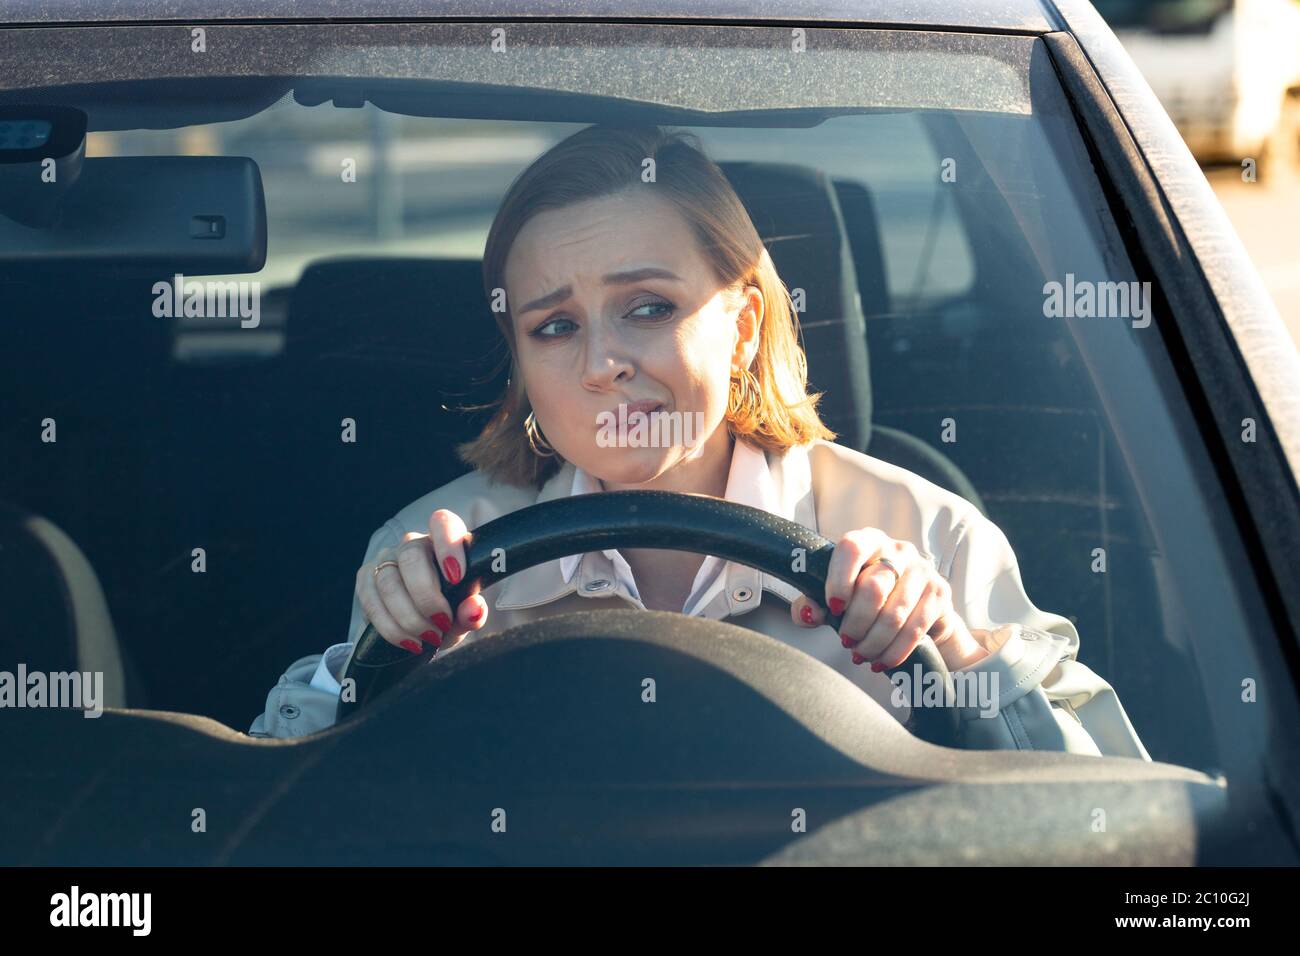 Femme conduit sa voiture pour la première fois, tente d'éviter un accident de voiture, est très nerveux et peur, s'inquiète, se crampon étroitement à la roue. Inexpérience Banque D'Images